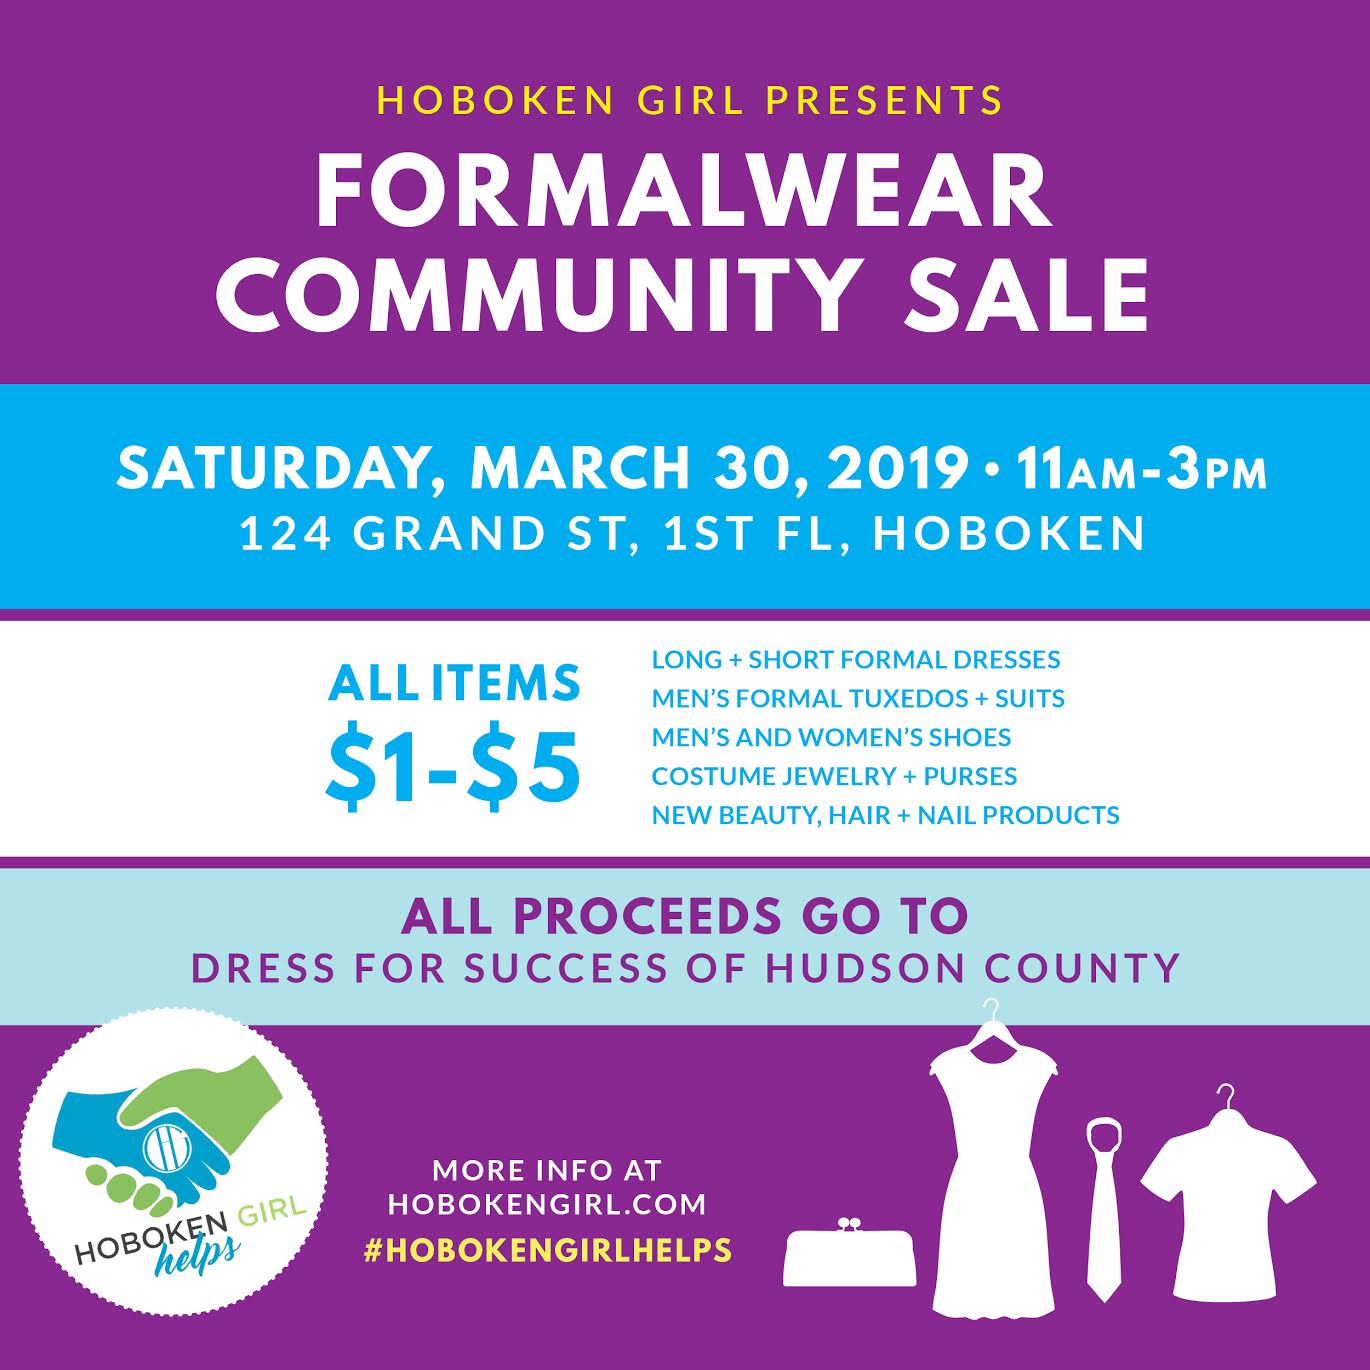 formalwear community sale 2019 new